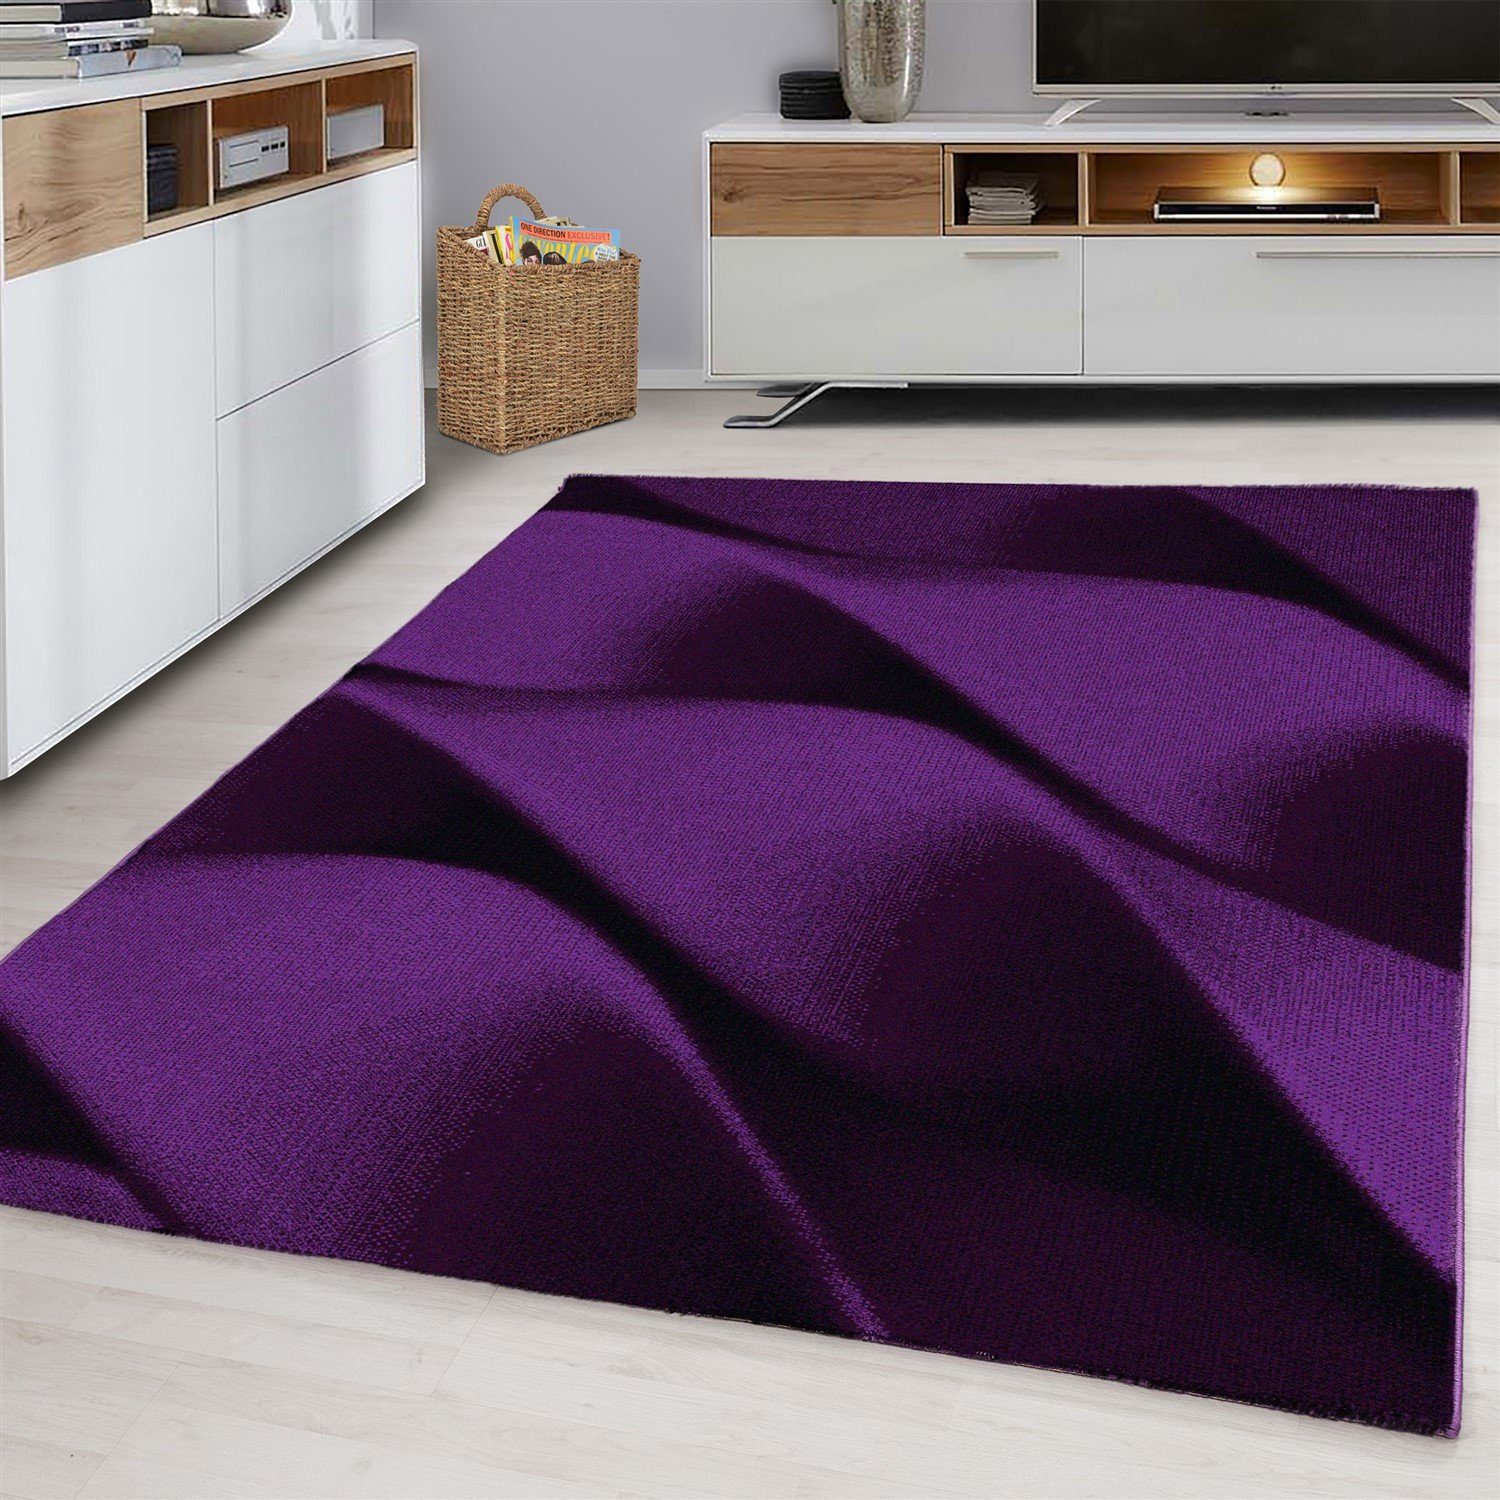 Flachflorteppich Teppich Kurzflorteppich Designteppich modern, Designteppich Miovani Lila